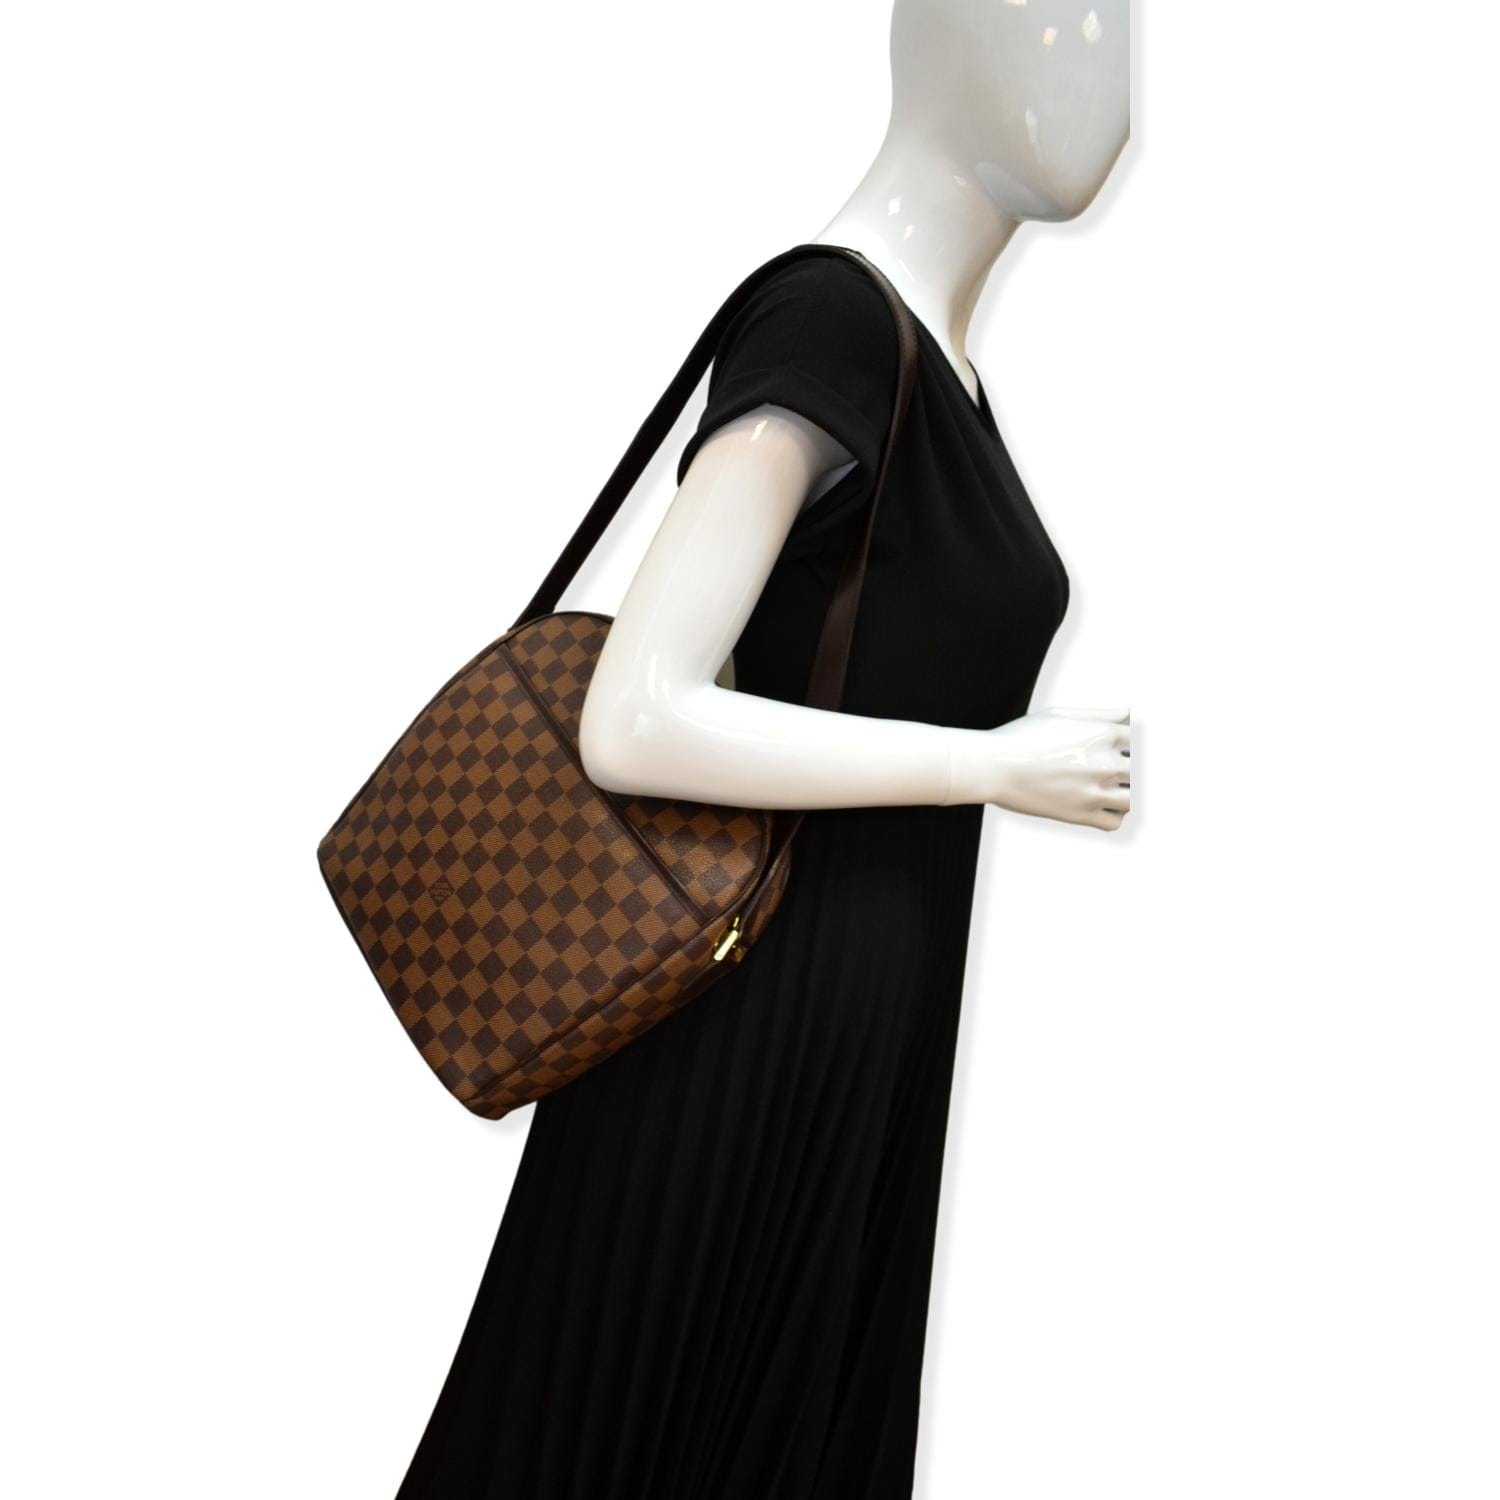 Louis Vuitton Ipanema GM Damier Ebene Canvas Shoulder Bag